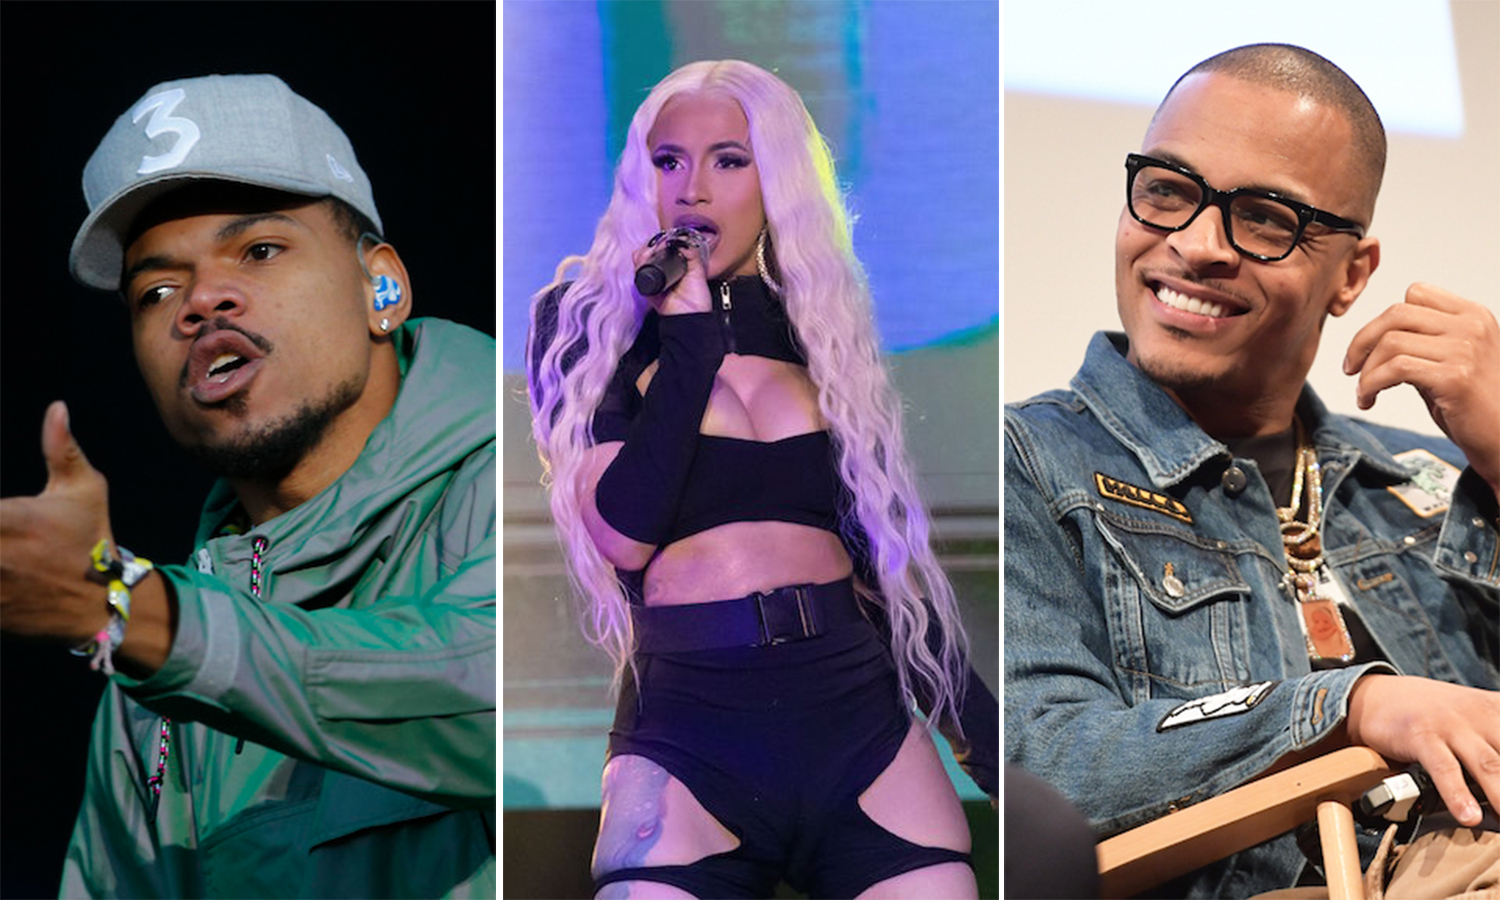 Cardi B, Chance The Rapper y T.I. serán los jurados en la nueva competición de hiphop de Netflix. Cusica Plus.